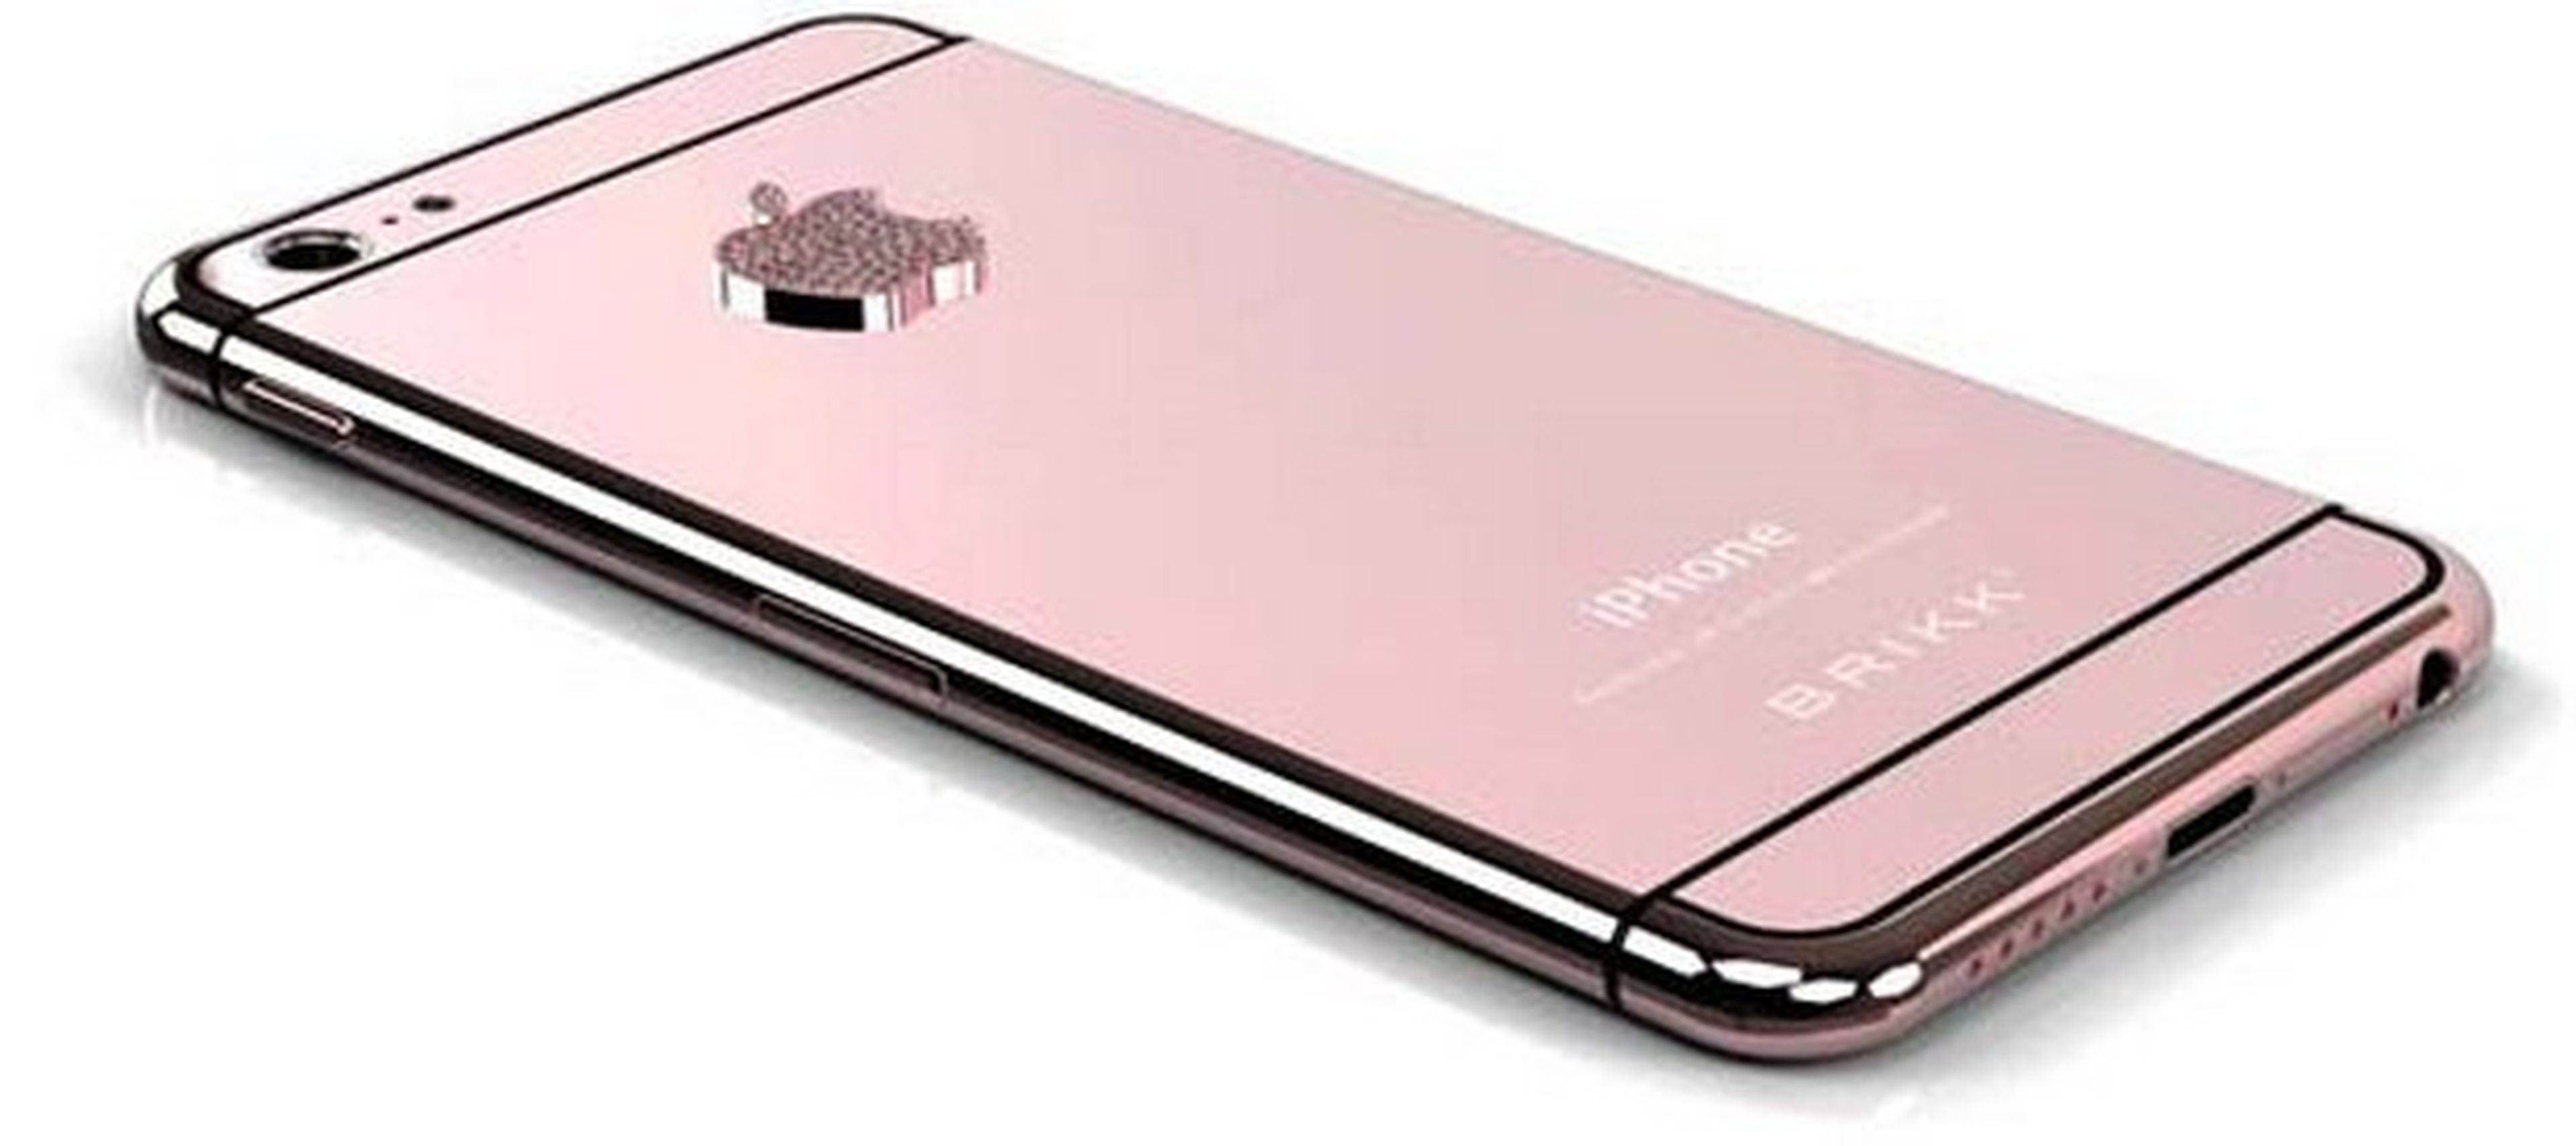 iPhone 6 oro rosa